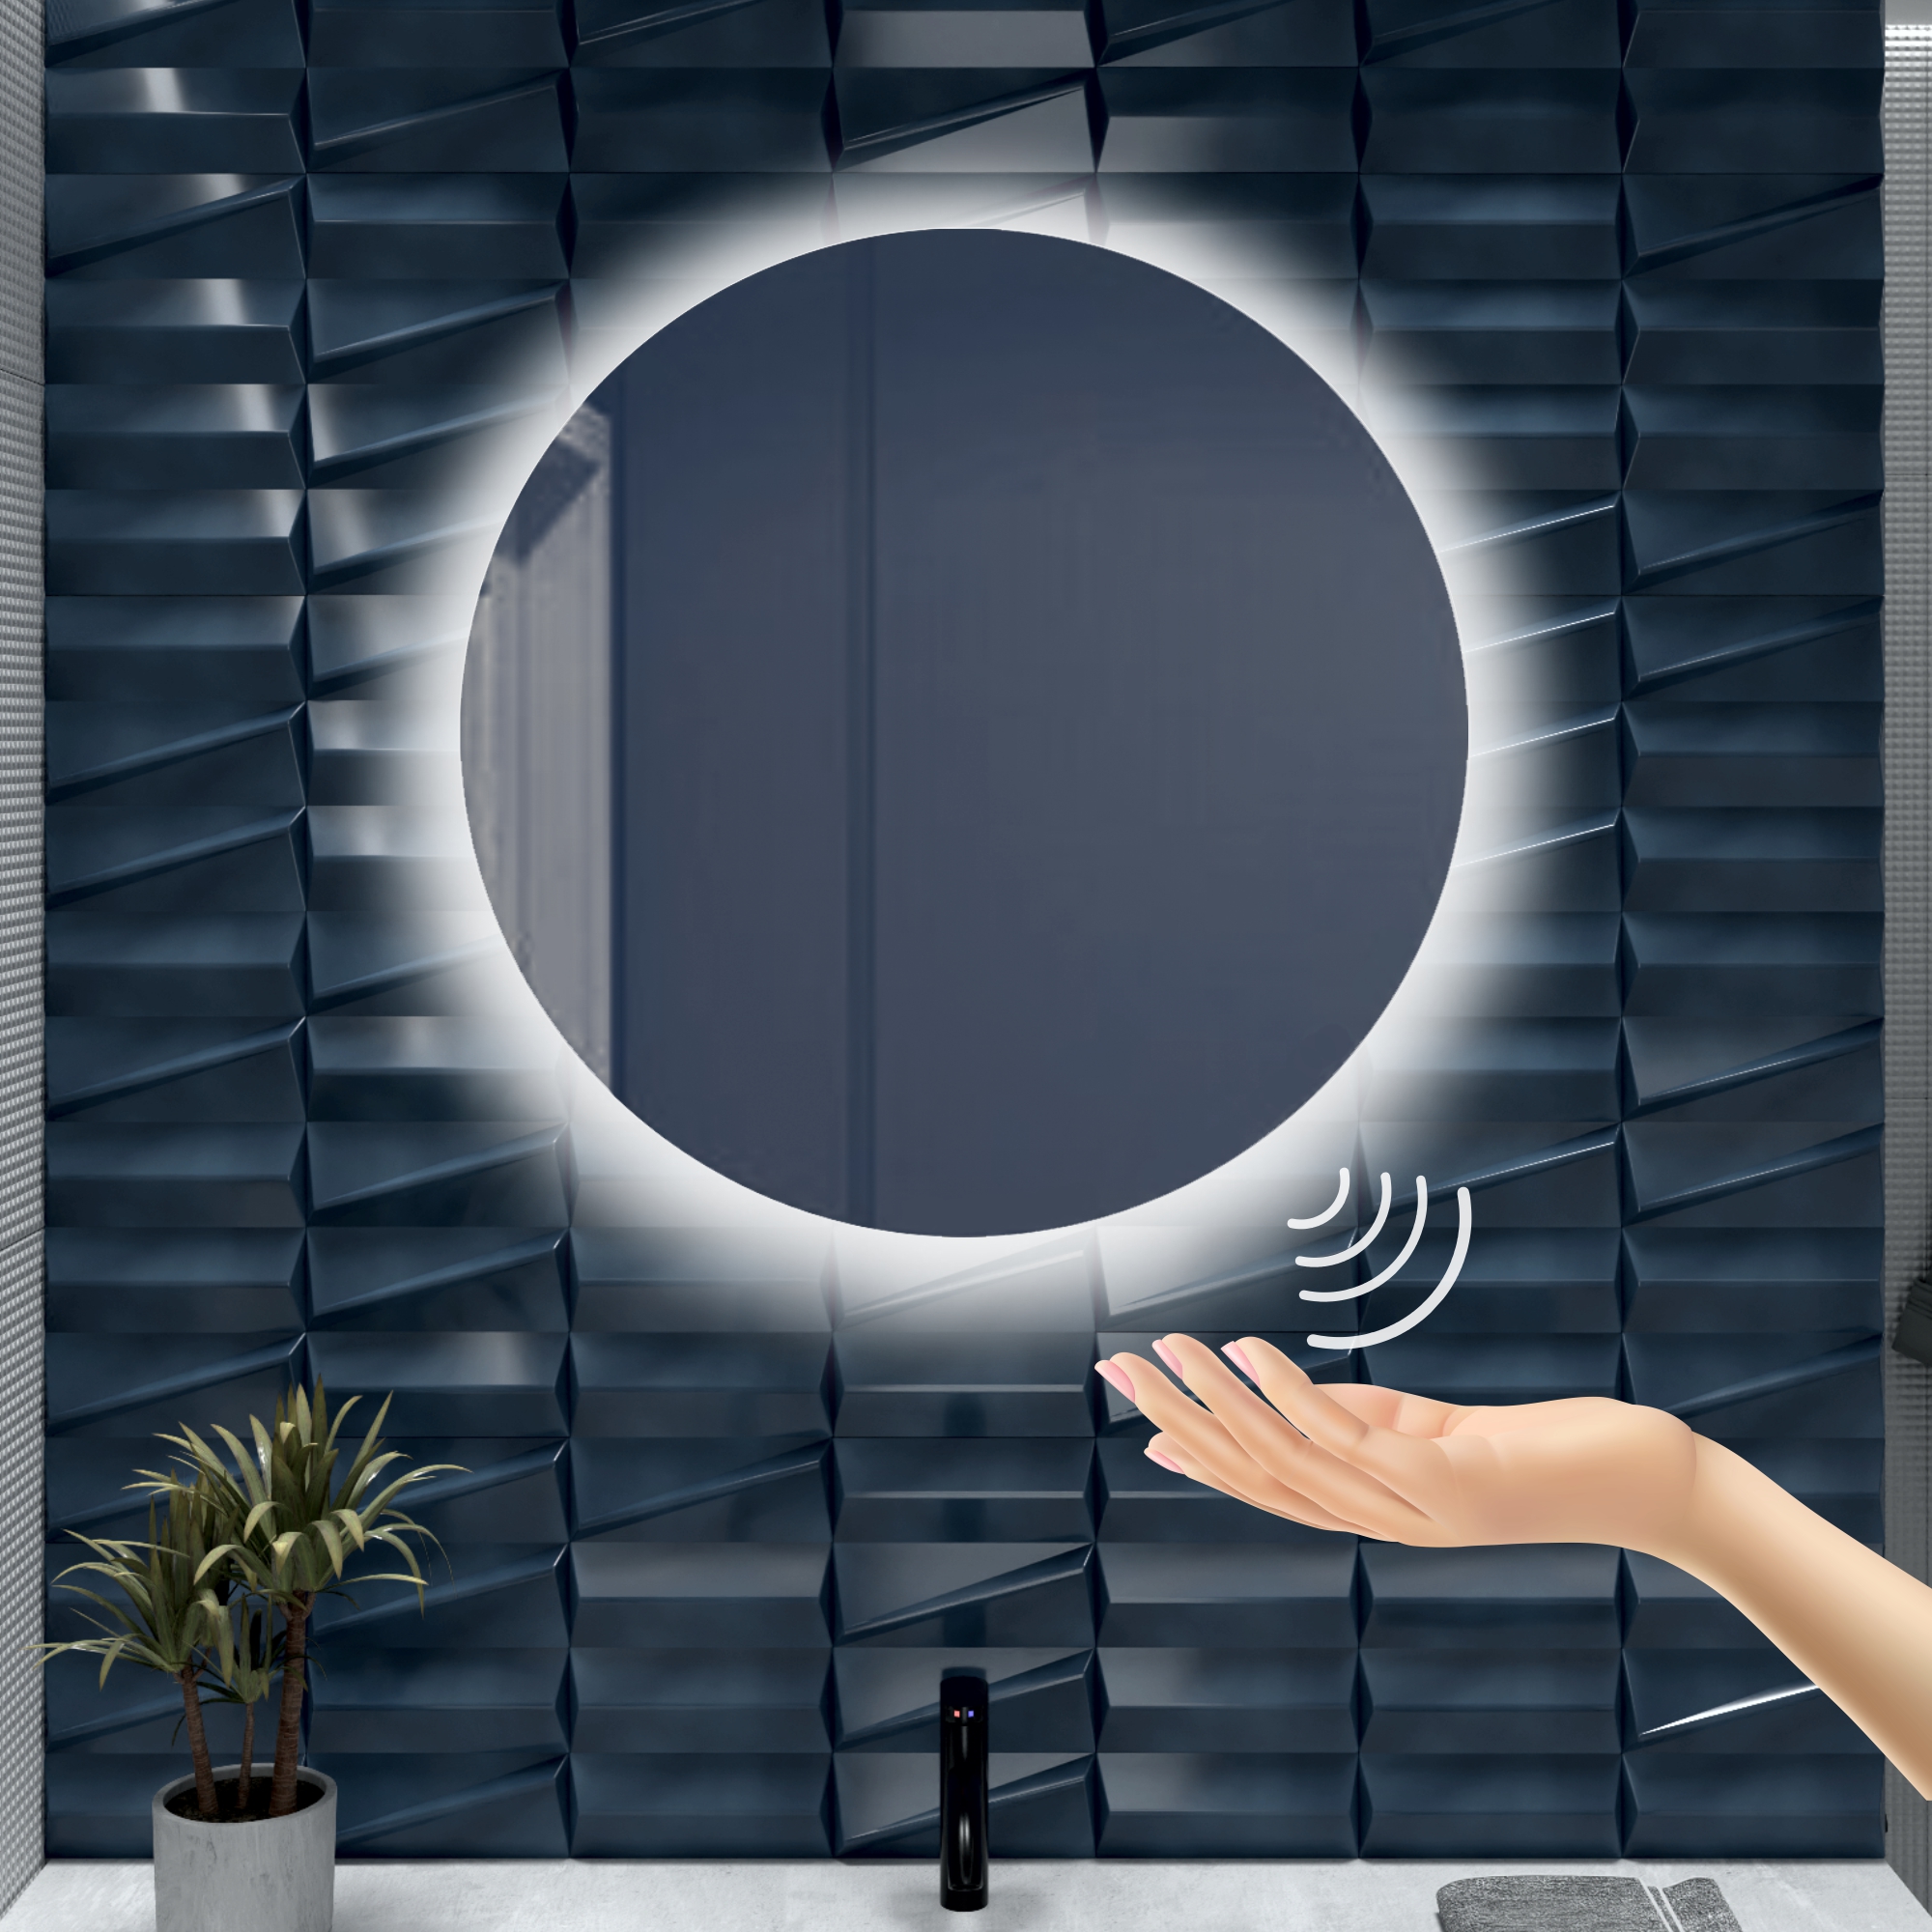 Зеркало для ванной Alfa Mirrors с холодной подсветкой 6500К круглое 80см, арт. Na-8Vzh зеркало для ванной alfa mirrors с холодной подсветкой 6500к круглое 40см арт na 4vzh